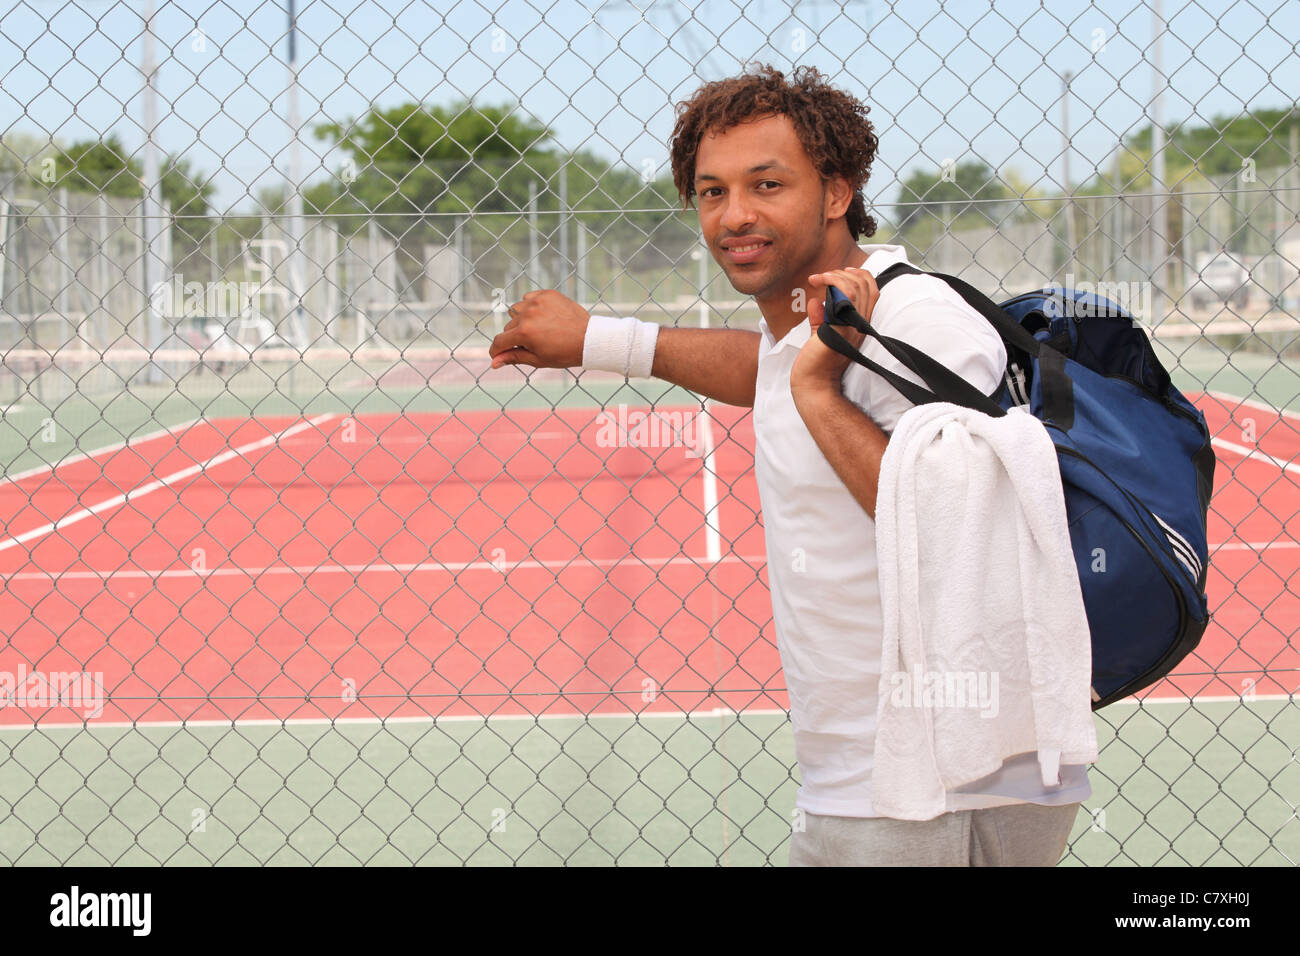 Giocatore di tennis con kit bag al di fuori del tribunale Foto Stock